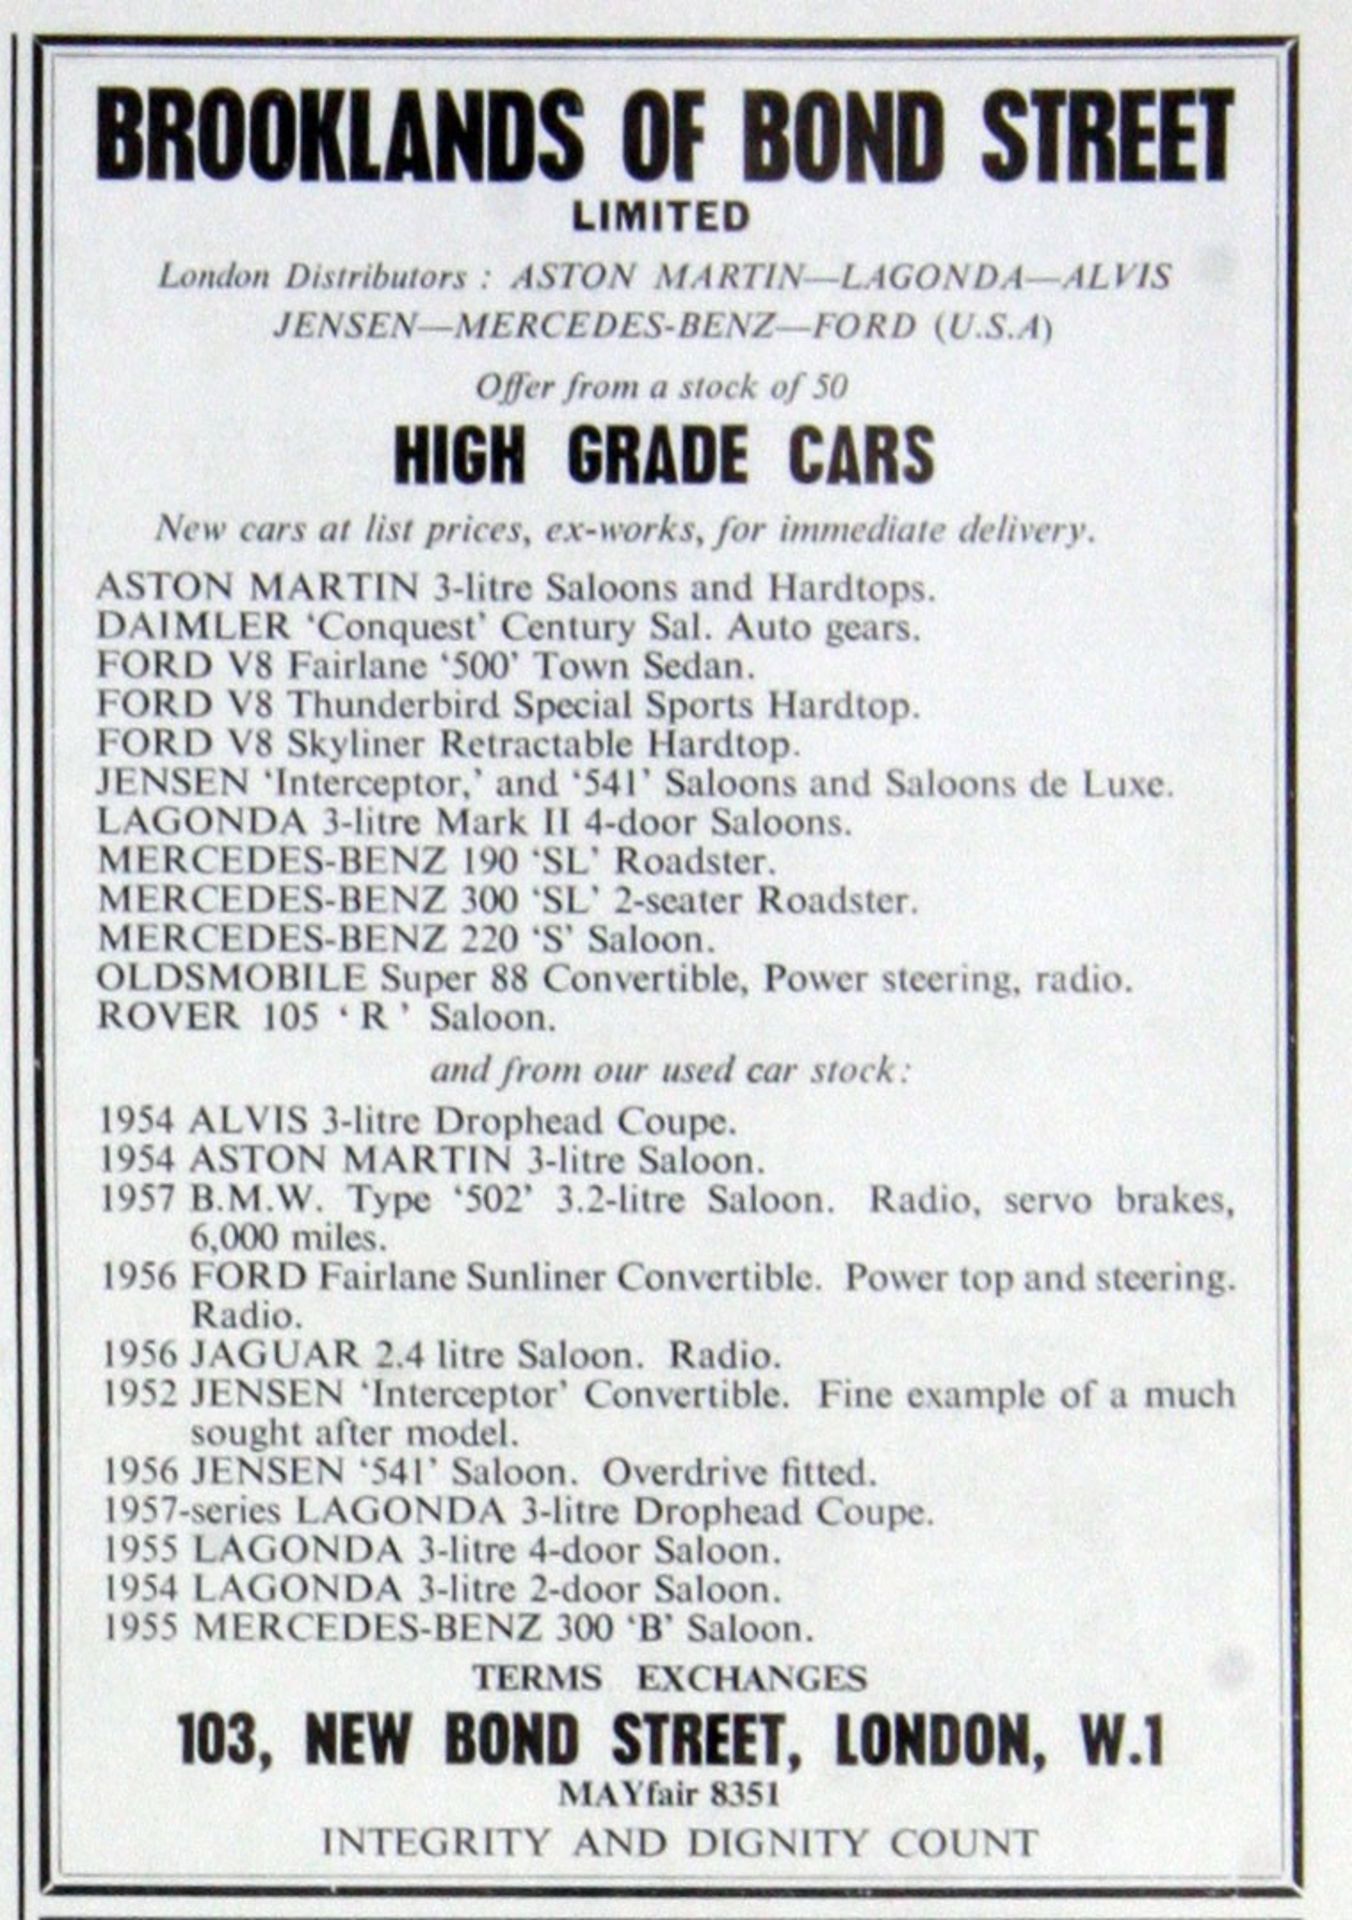 1952 JENSEN INTERCEPTOR CABRIOLET Registration Number: USK 657 Chassis Number: INT 18344Y Recorded - Image 41 of 41